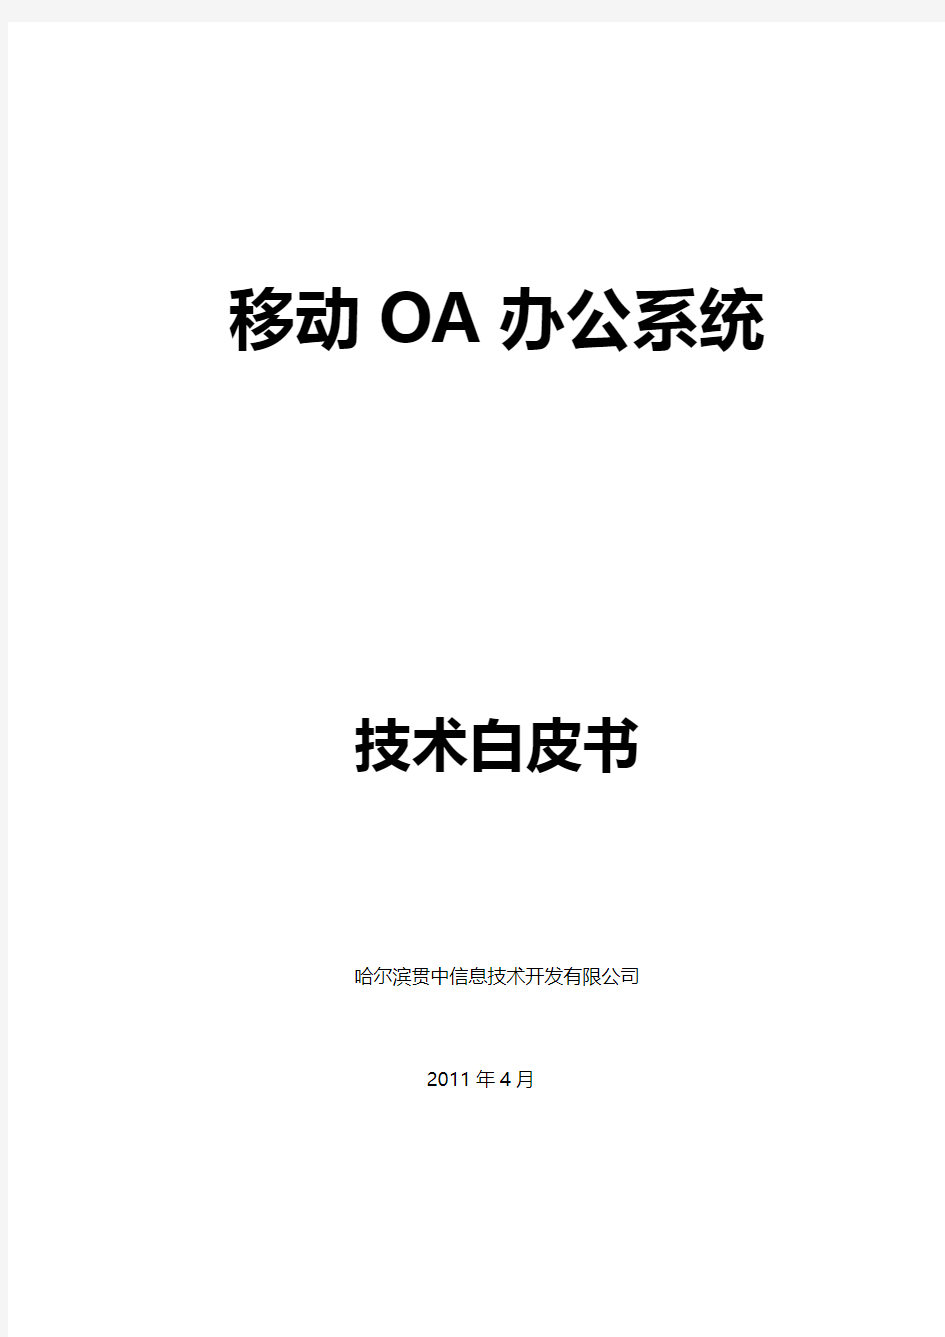 移动OA系统技术白皮书2.2